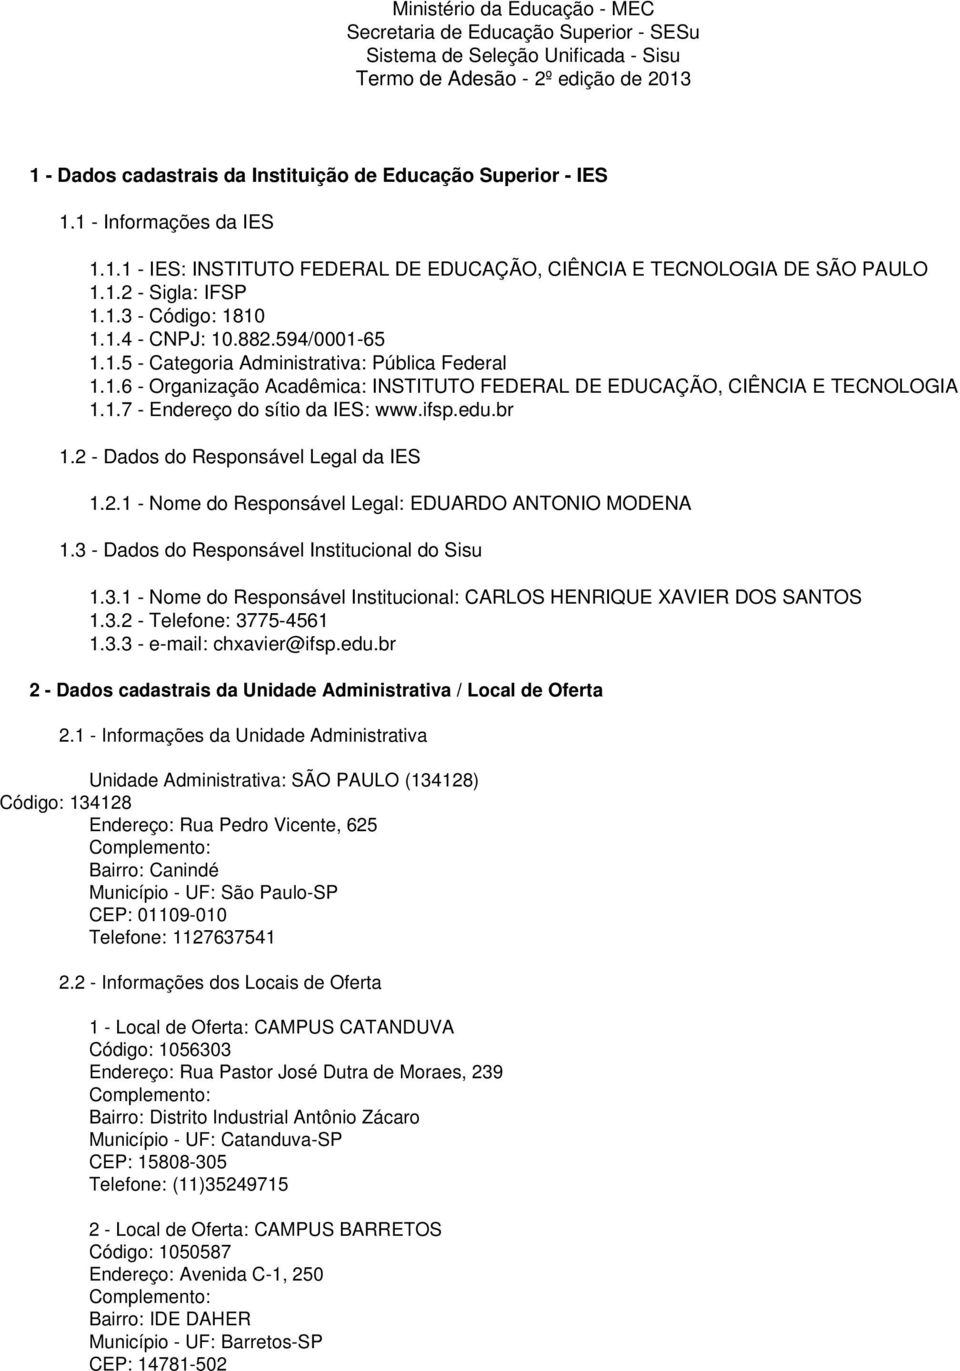 1.6 - Organização Acadêmica: INSTITUTO FEDERAL DE EDUCAÇÃO, CIÊNCIA E TECNOLOGIA 1.1.7 - Endereço do sítio da IES: www.ifsp.edu.br 1.2 - Dados do Responsável Legal da IES 1.2.1 - Nome do Responsável Legal: EDUARDO ANTONIO MODENA 1.